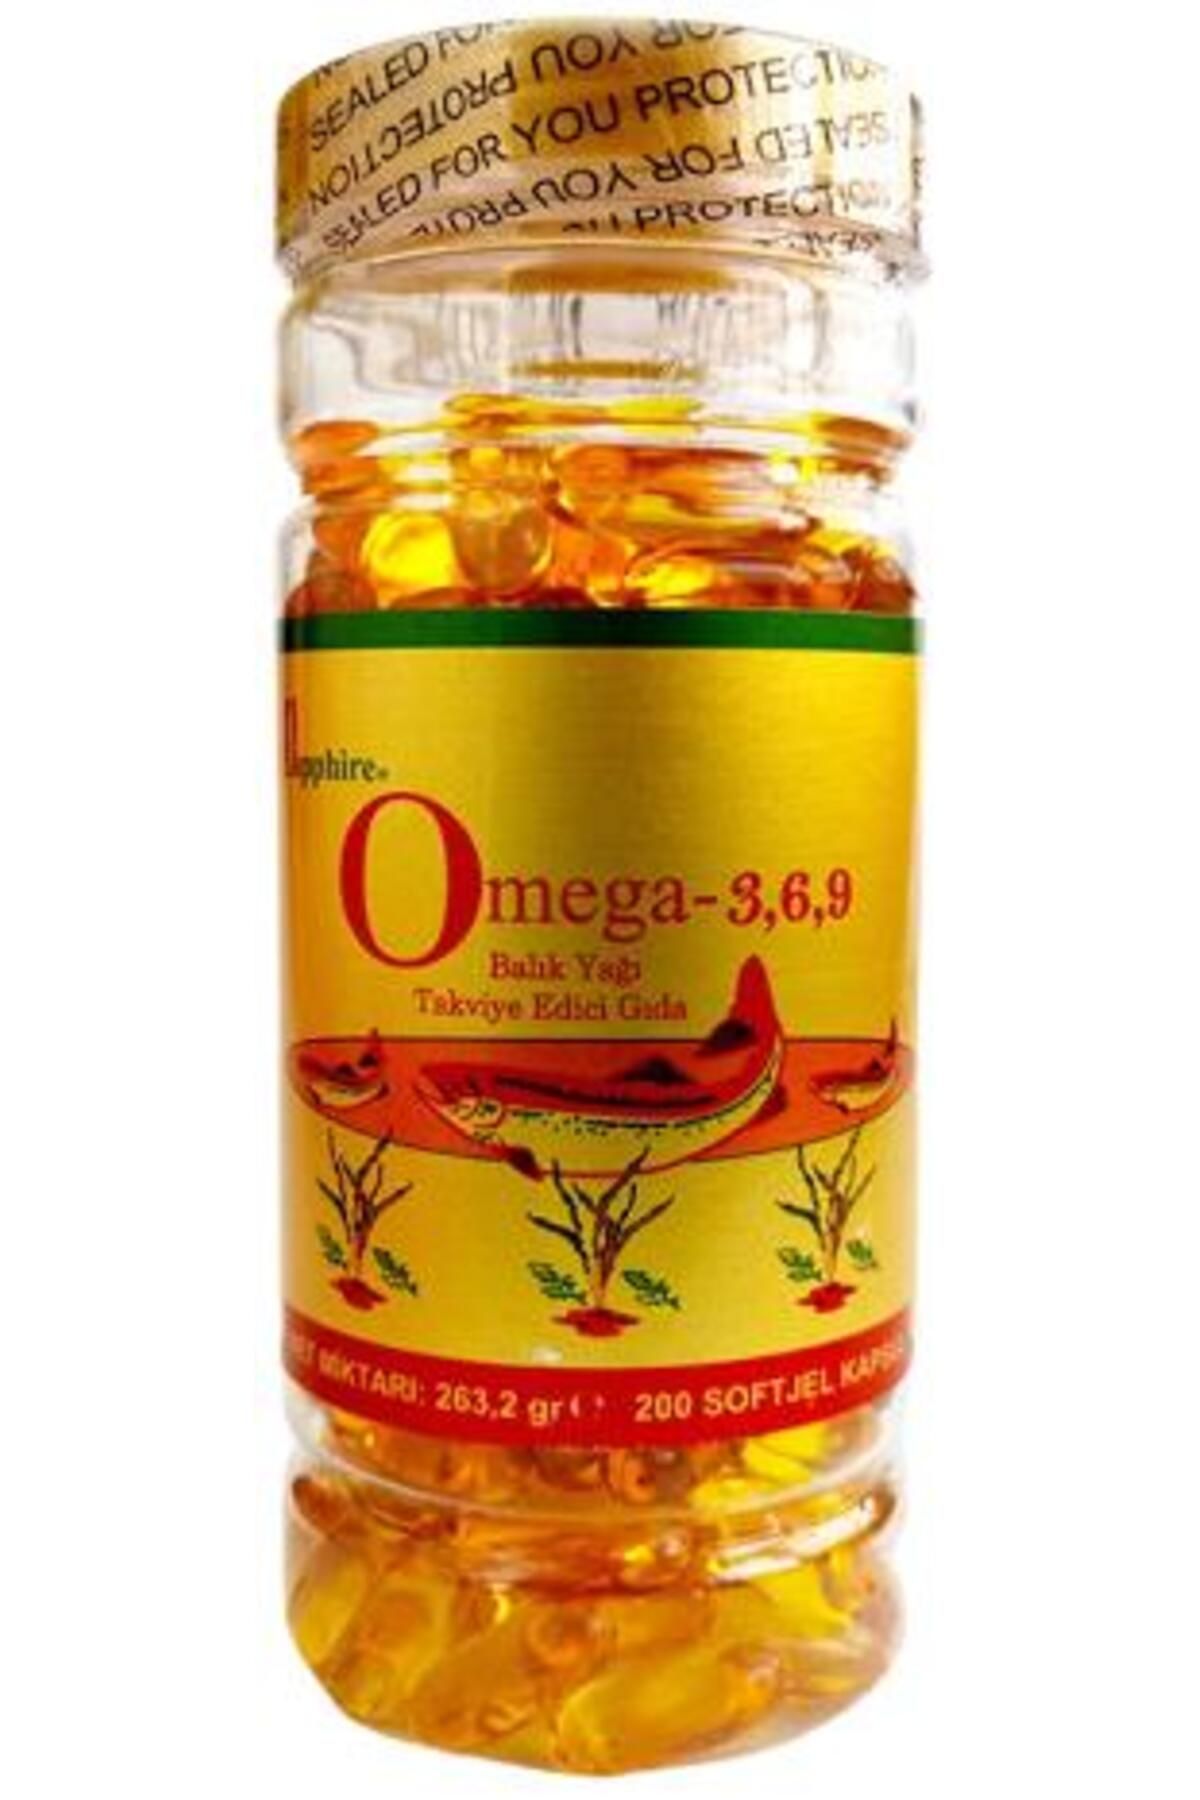 SAPPHIRE Balık Yağı Omega 3-6-9 1000 Mg 200 Softgel